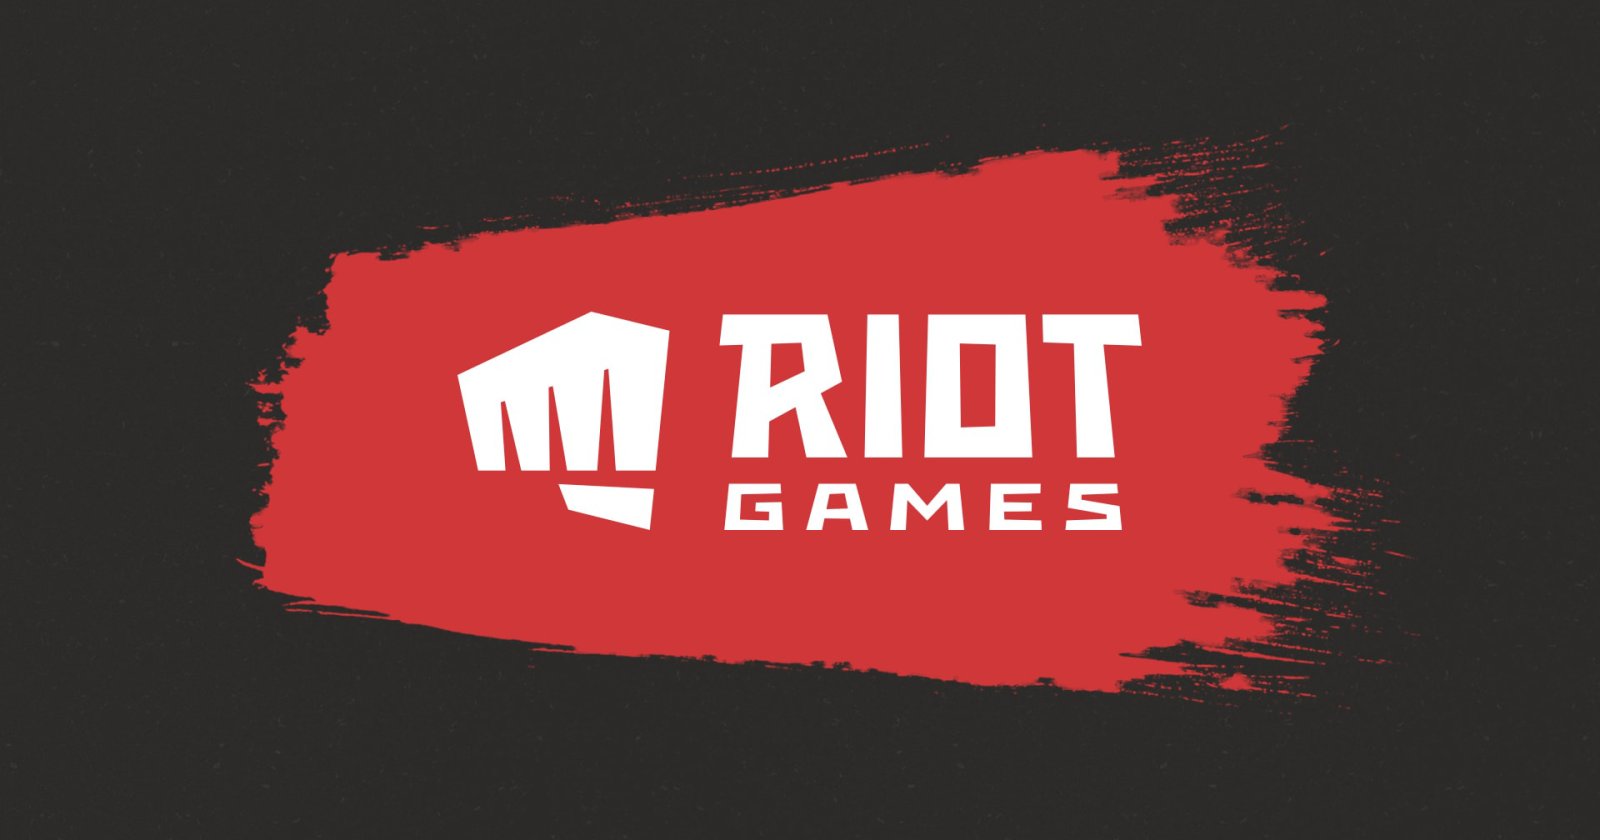 Riot Games สั่งปลดพนักงาน 530 ตำแหน่ง พร้อมเปลี่ยนแผนมาพัฒนา League of Legends มากขึ้น